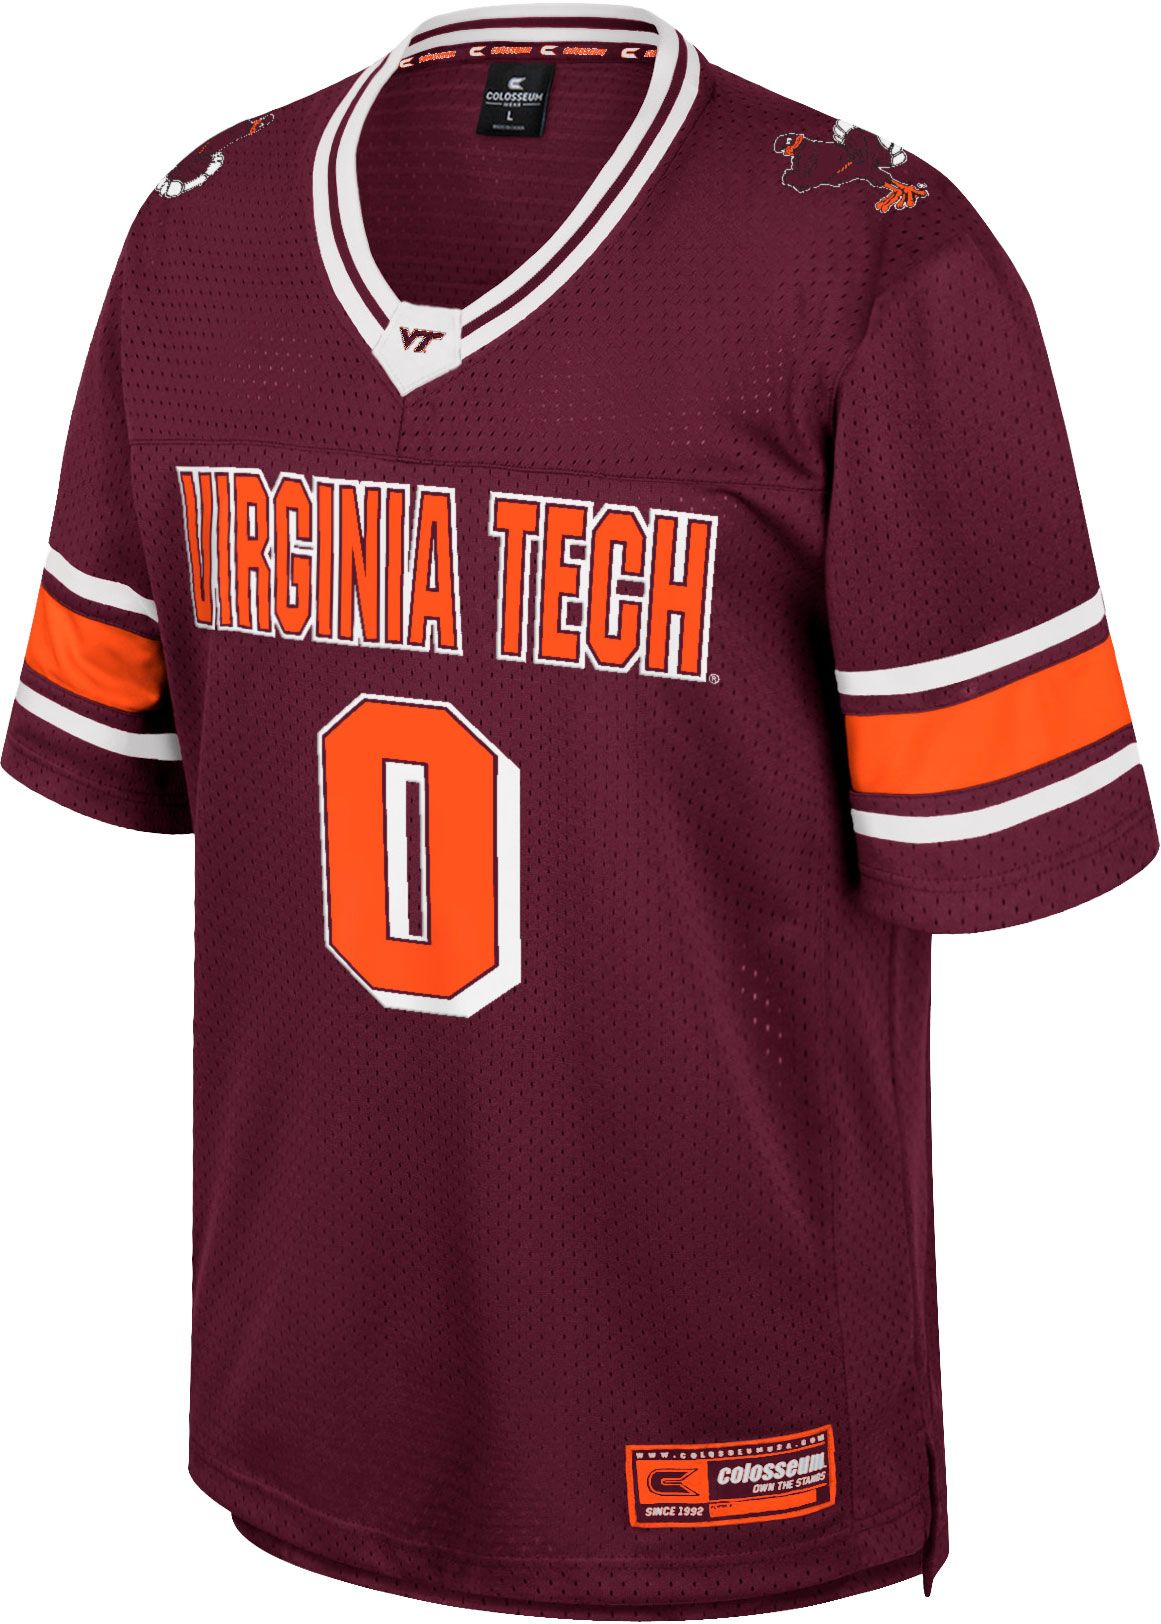 Virginia Tech Hokies softball apparel